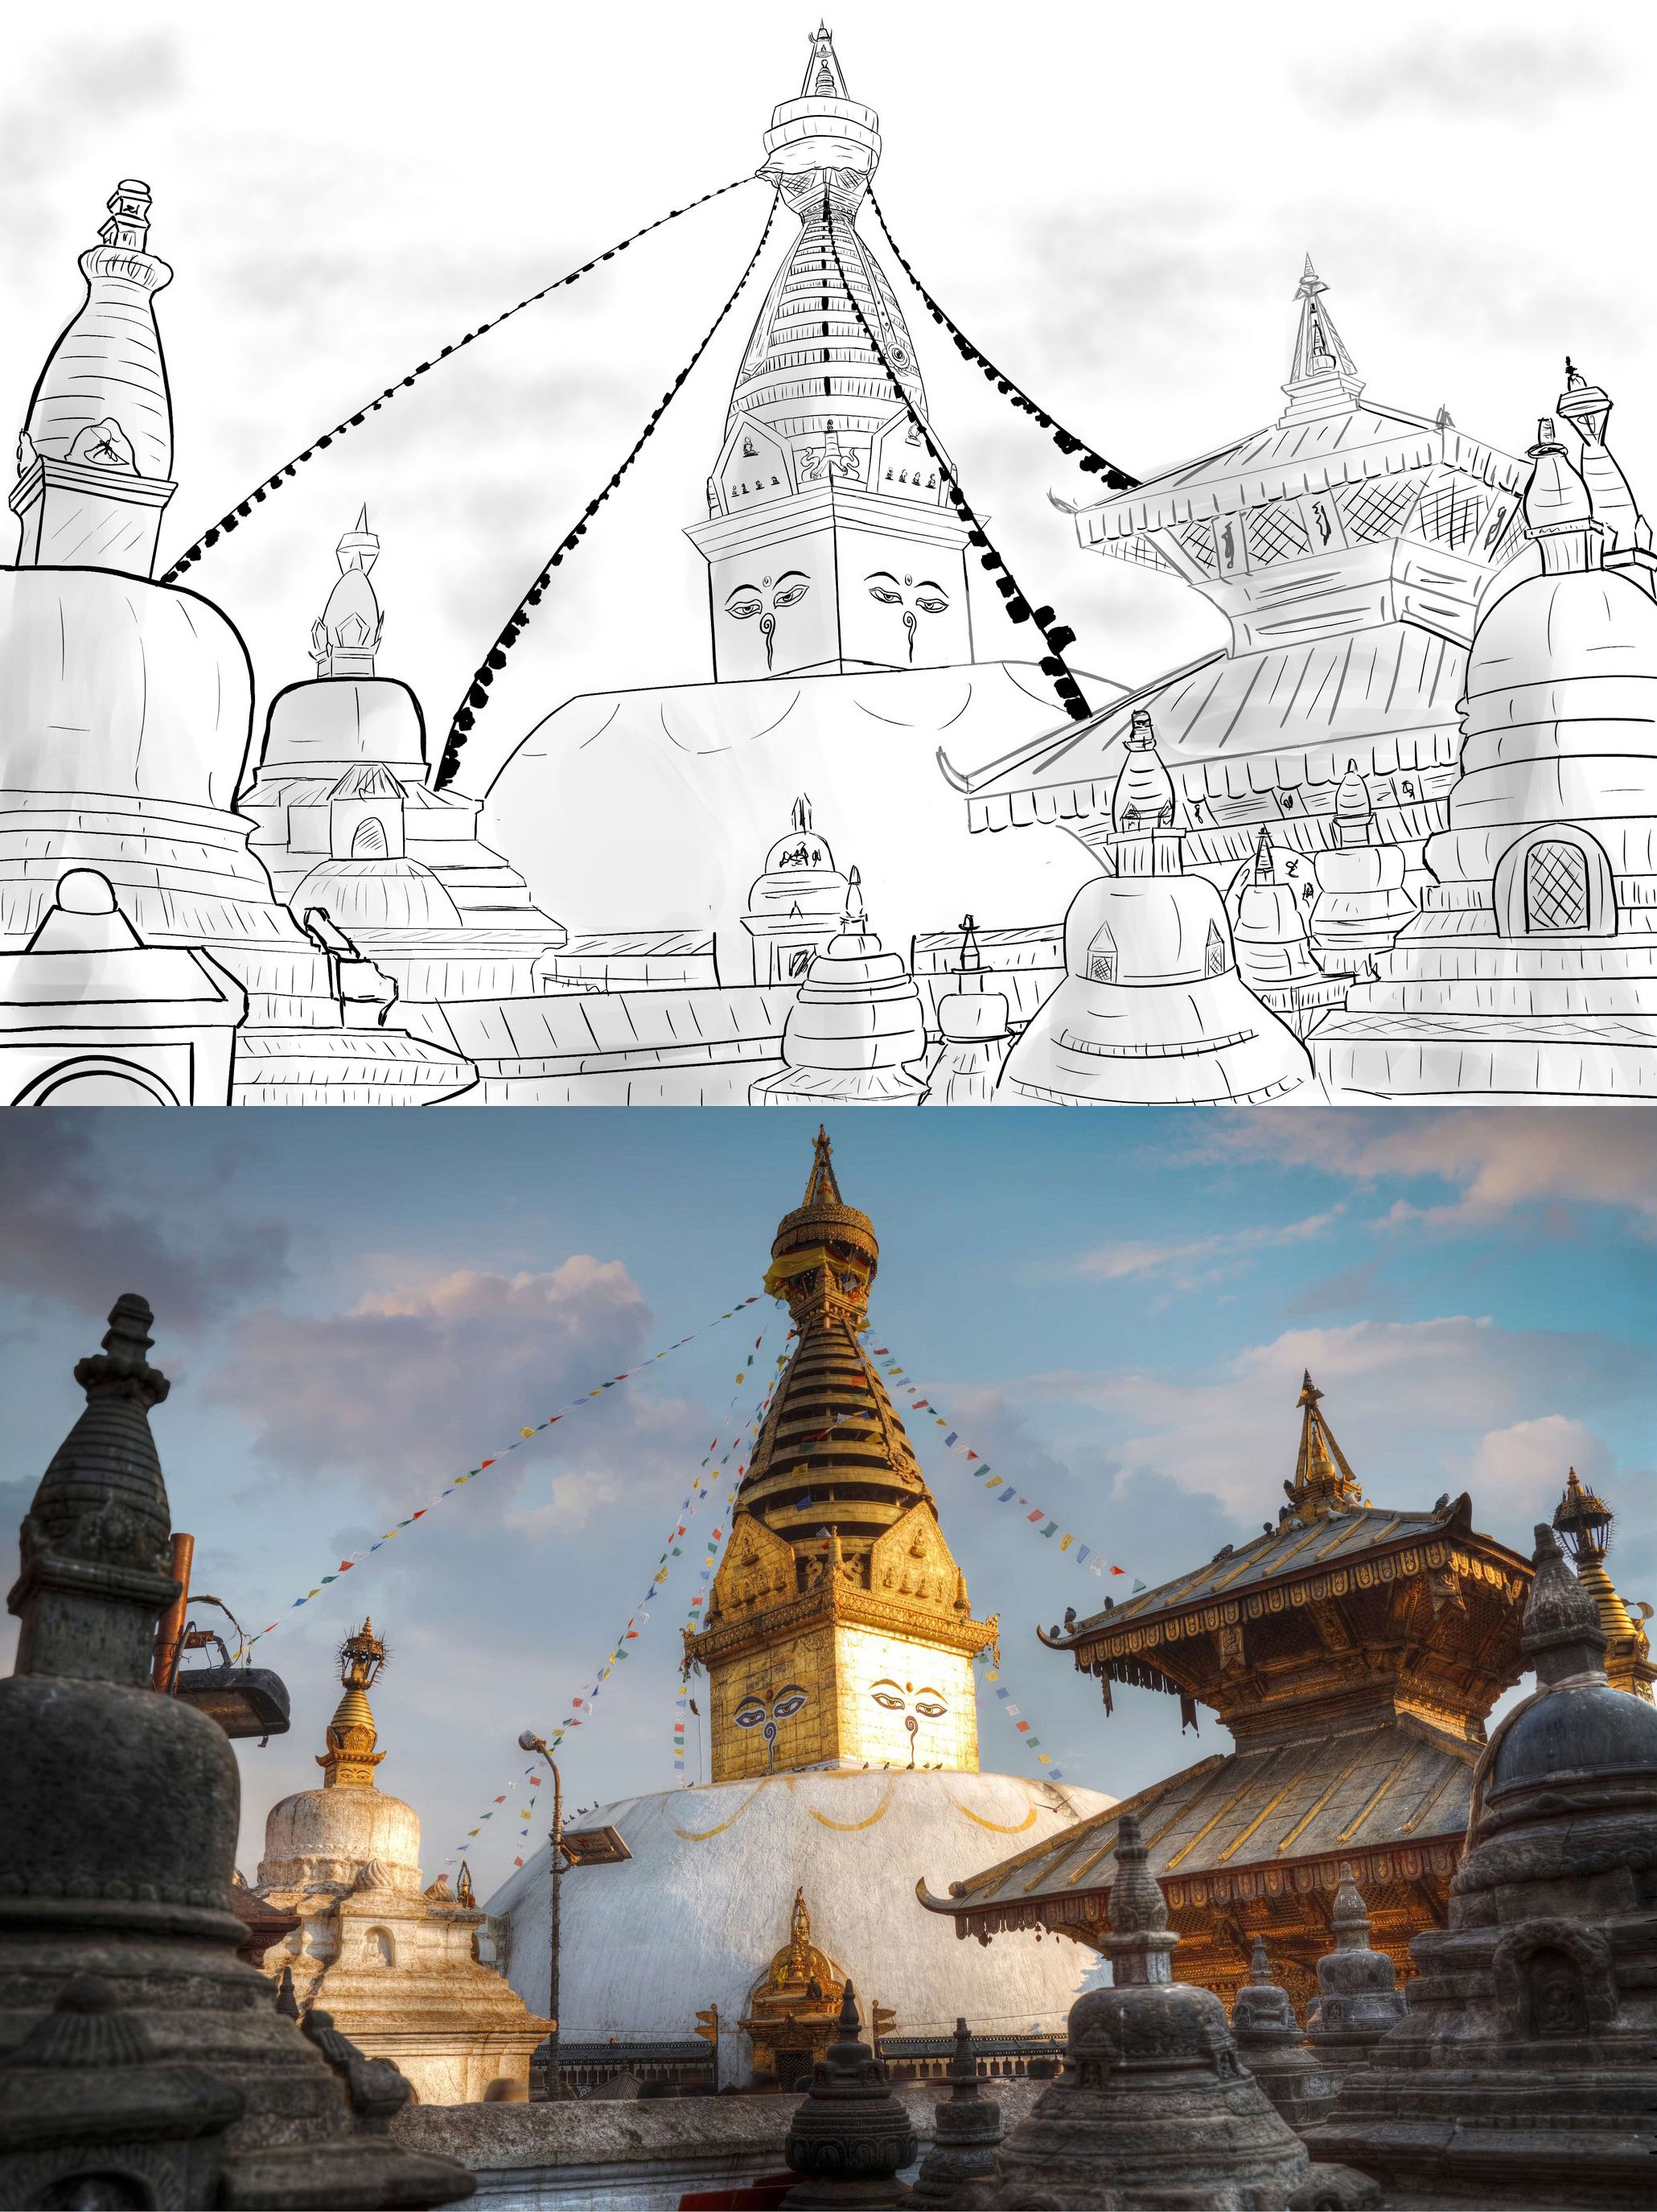 Le stūpa de Swayambhunath (Kathmandu, Népal) par Caméléon